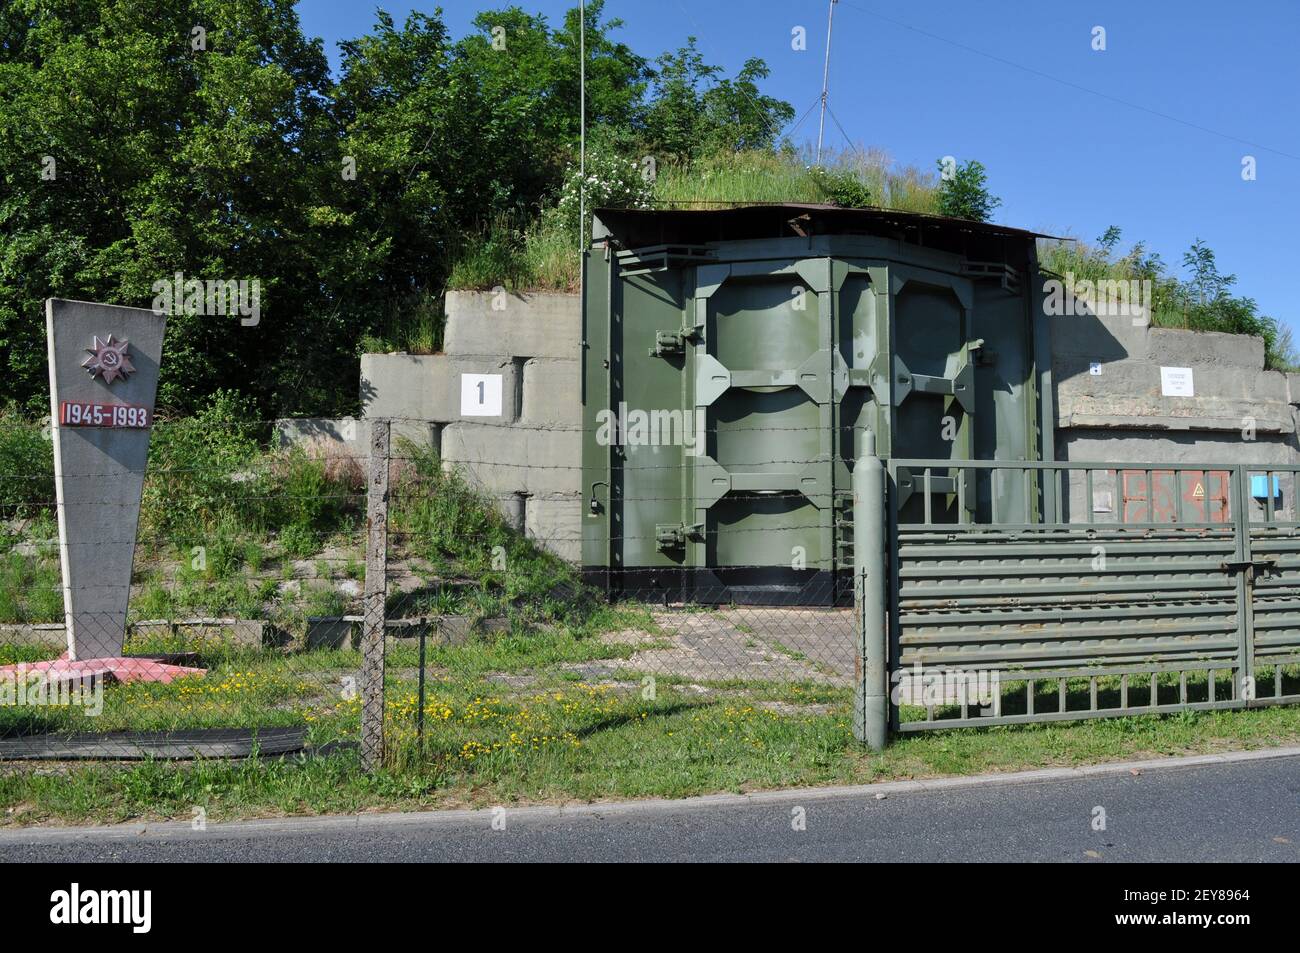 Ehemalige Sonderwaffenlager (Bunker granit Typ 1) Für atomare Kernwaffen (Atombombe) auf dem Flugplatz Großenhain am 6.6.2016 Banque D'Images